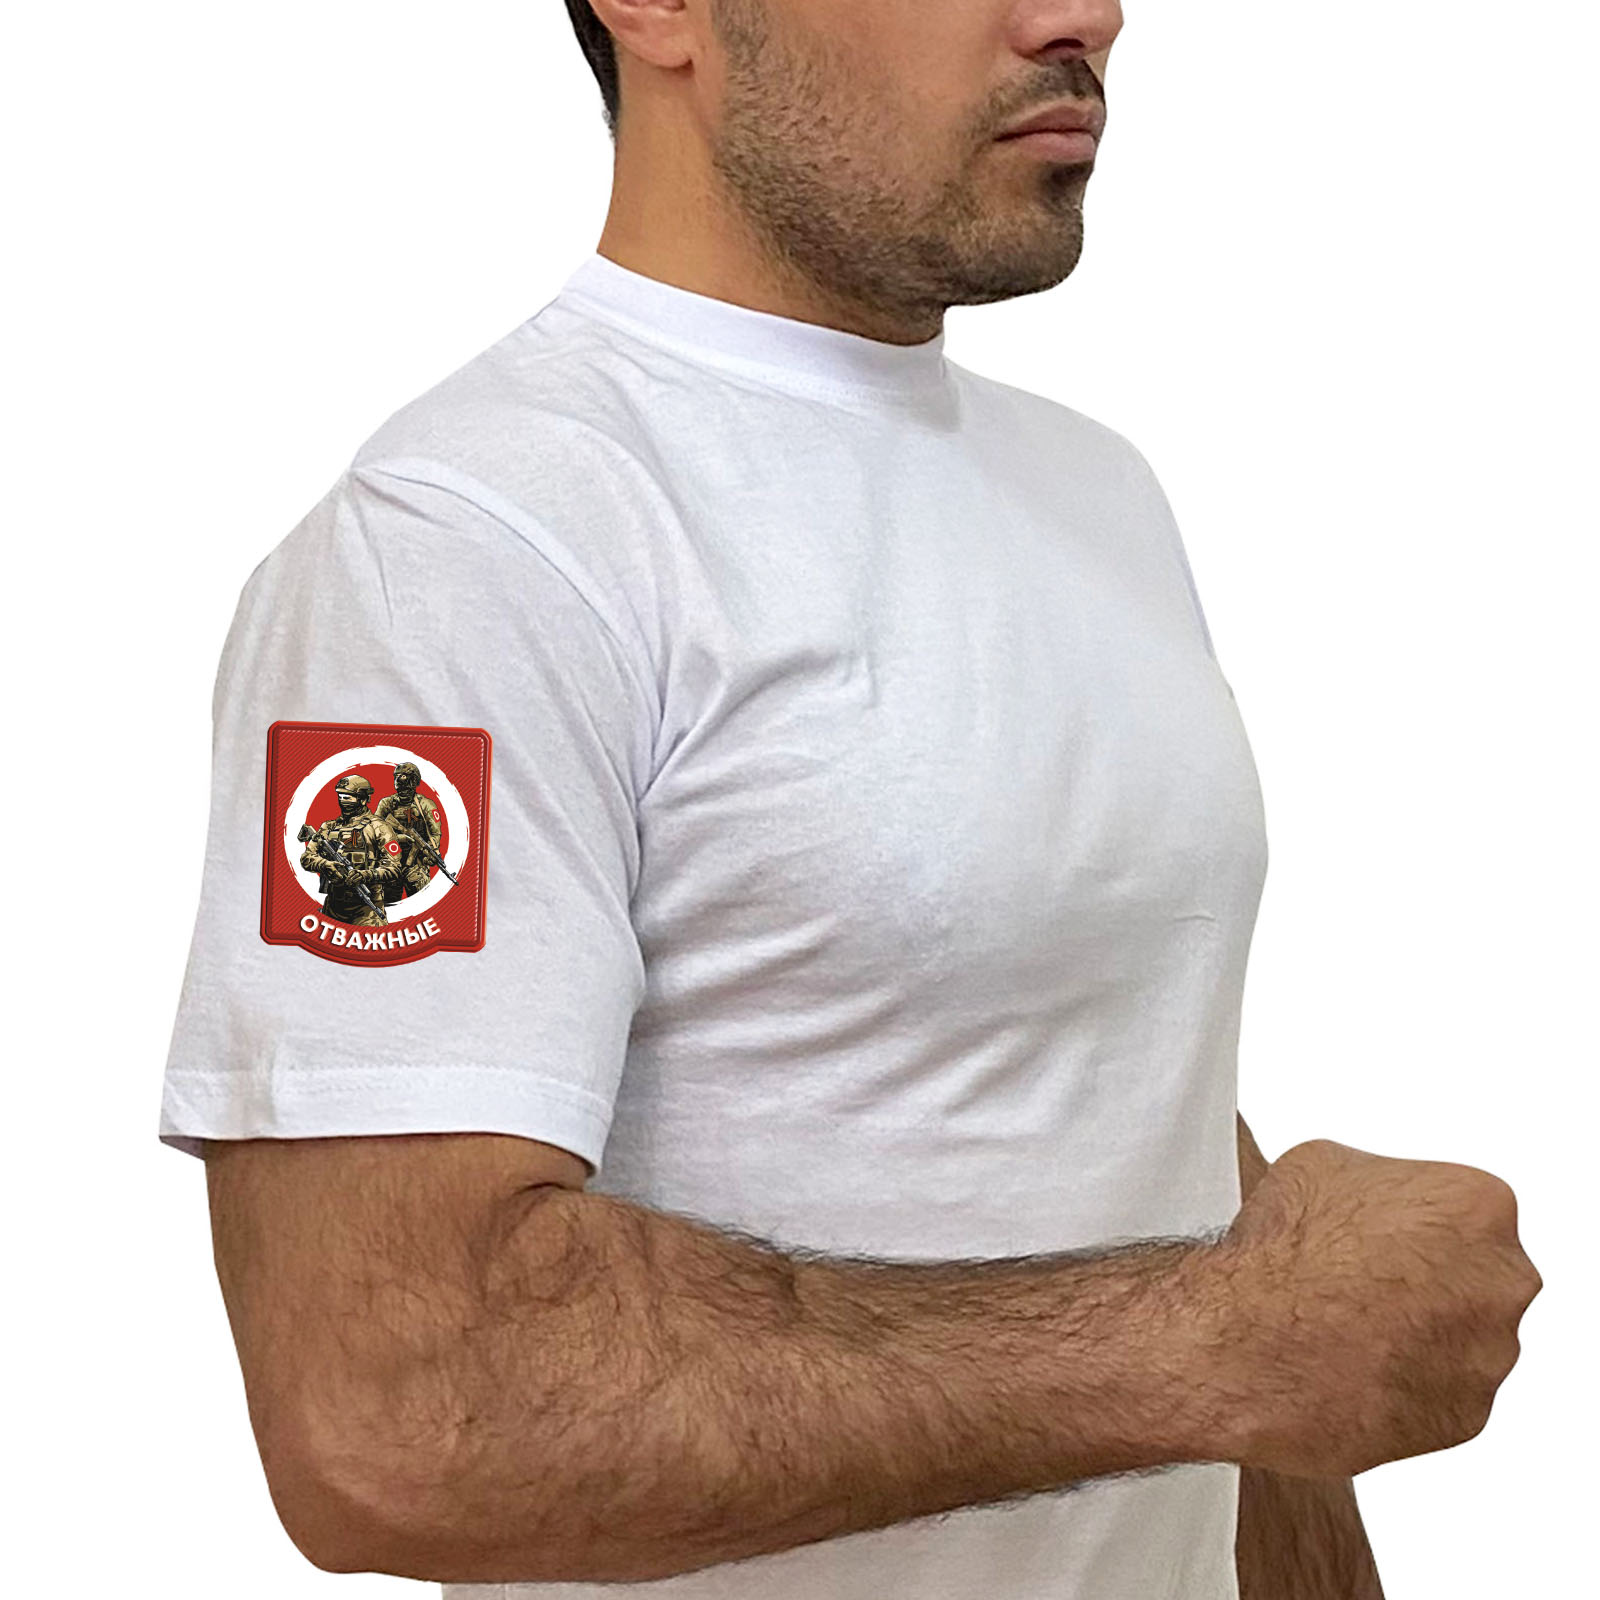 Белая футболка с термотрансфером "Отважные" на рукаве